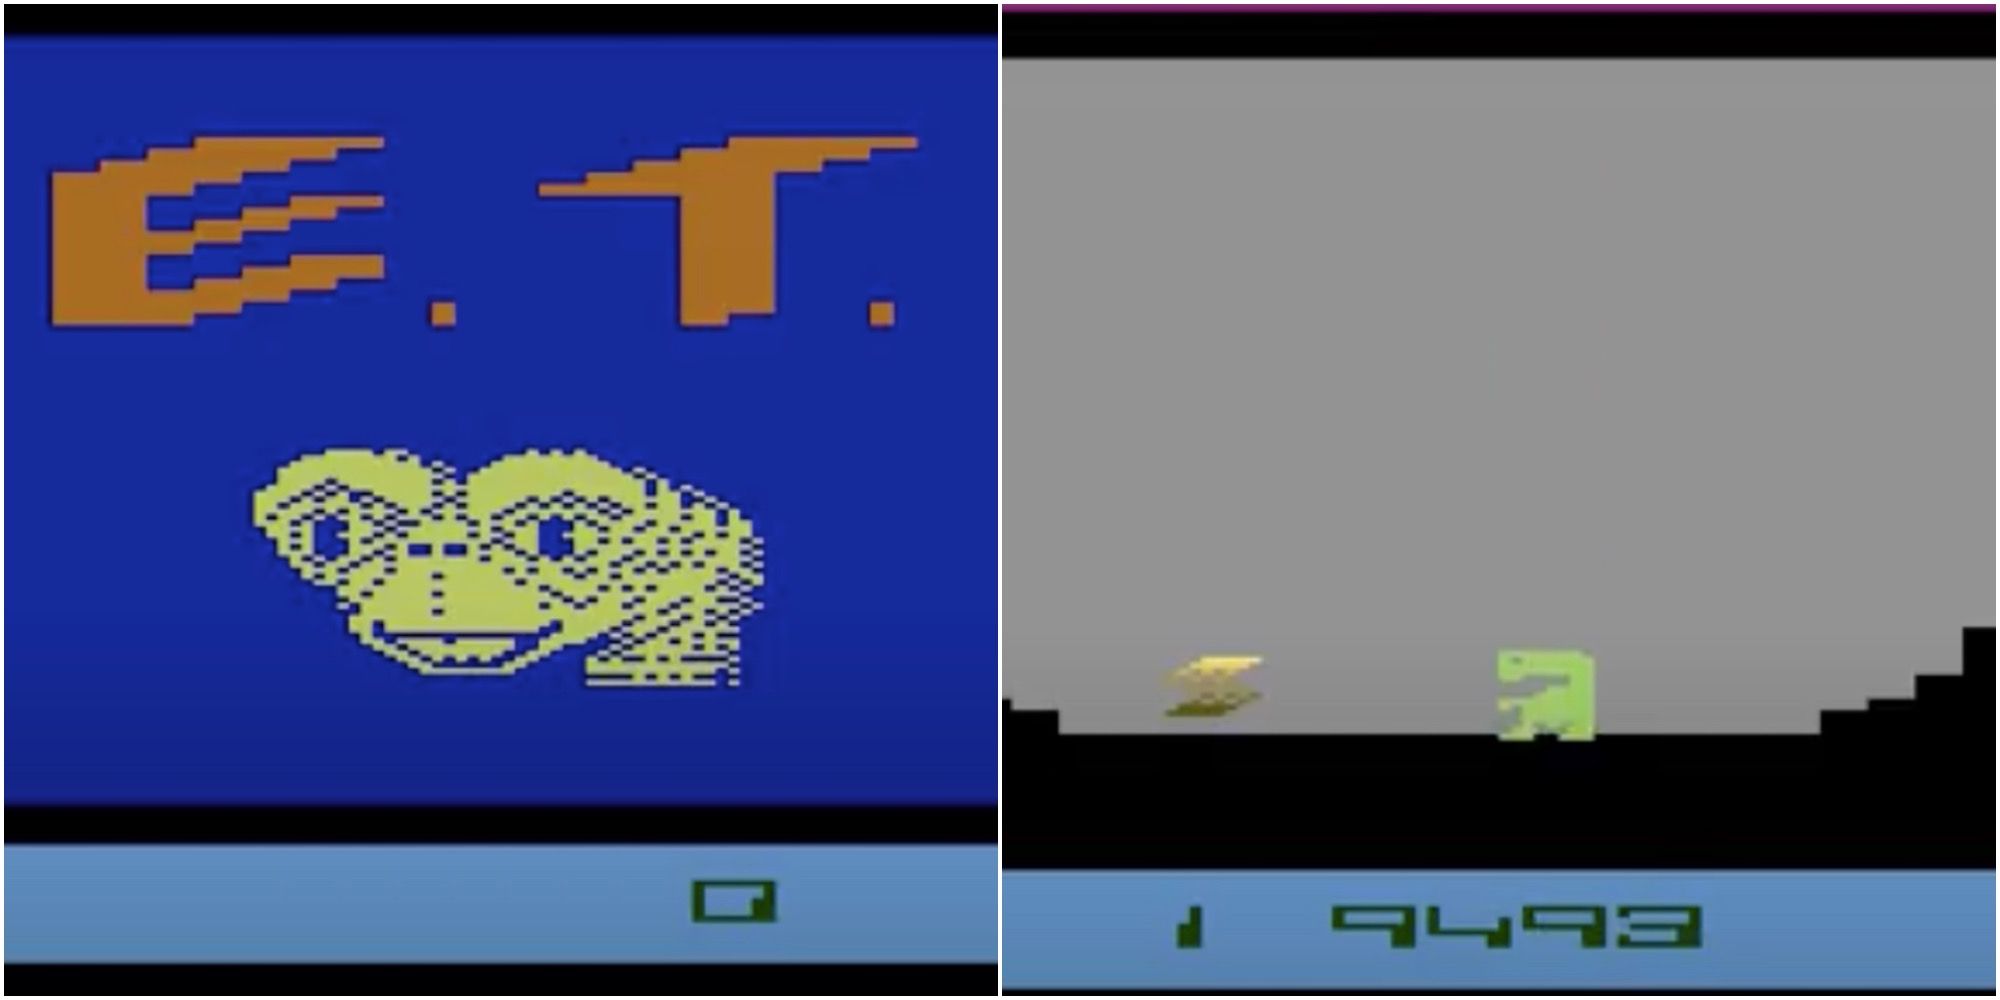 screenshots from the E.T. atari game